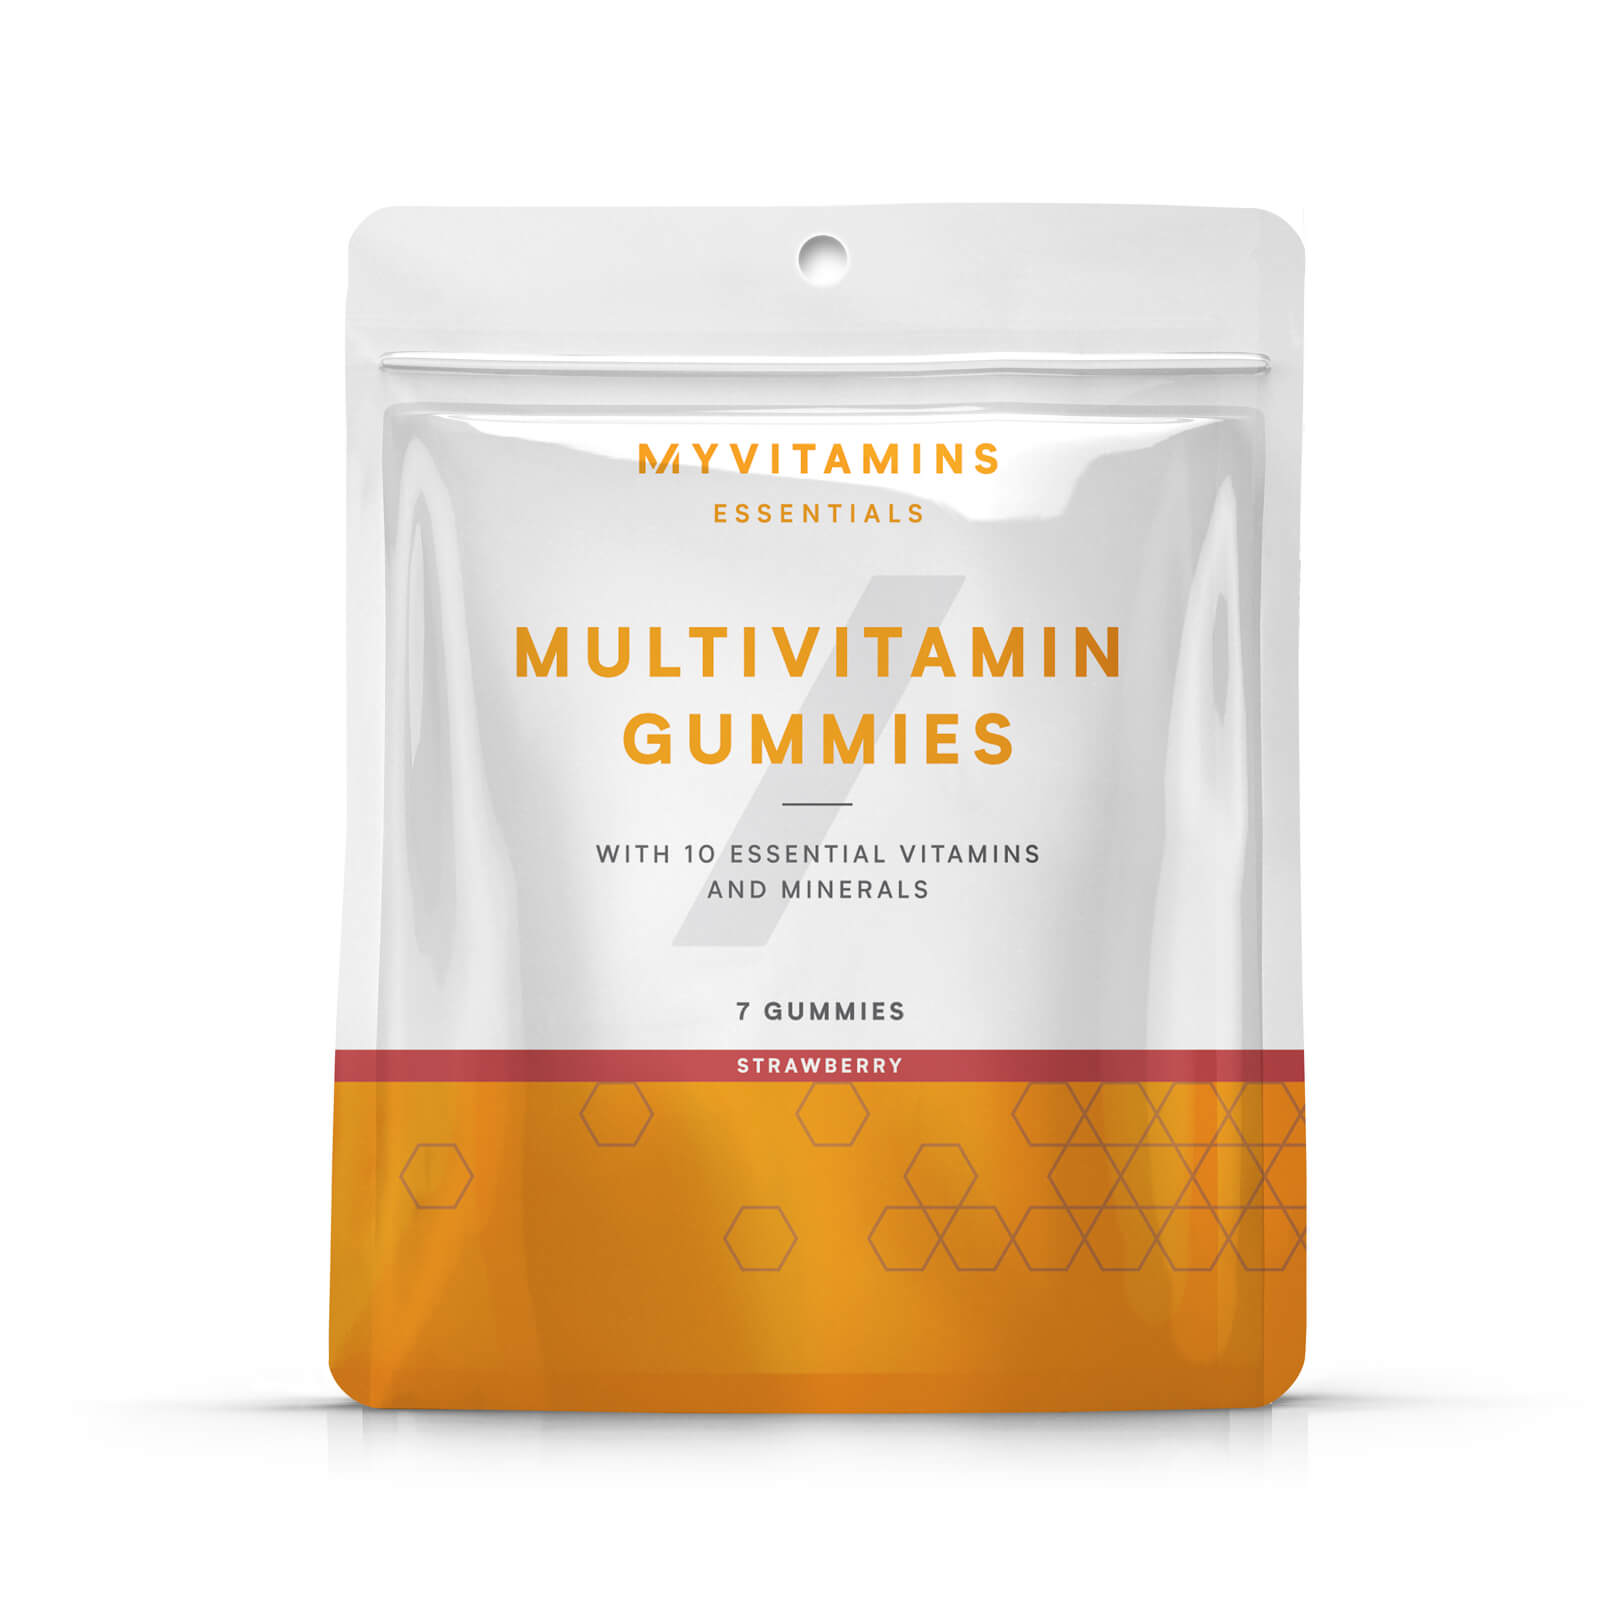 Myvitamins Multivitamin Gummy Sample Pouch - 7gummies - Strawberry